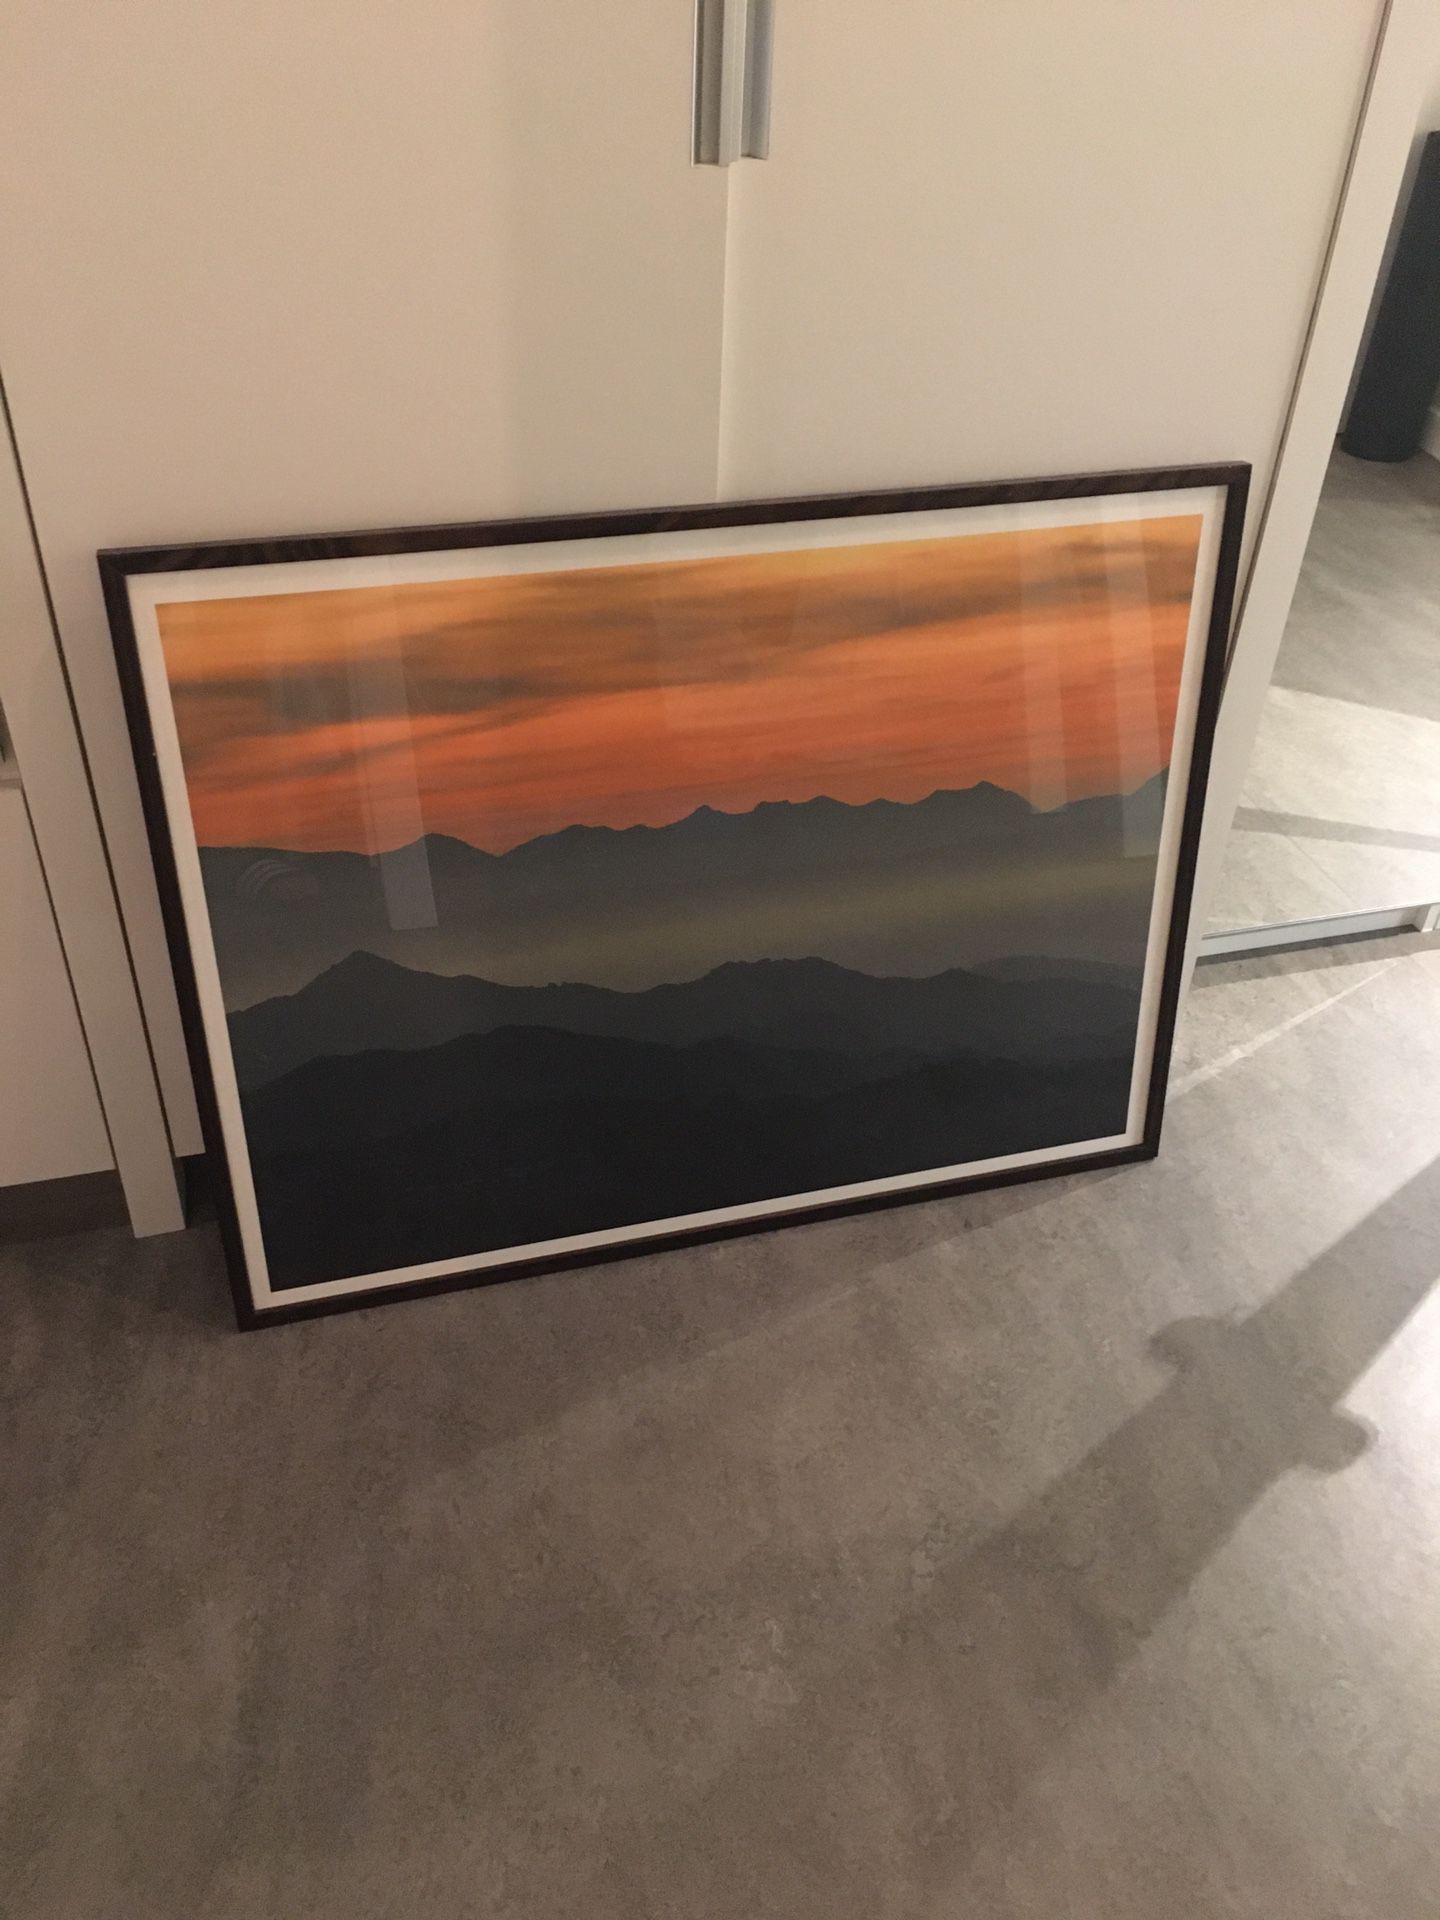 Sunset mountains photo